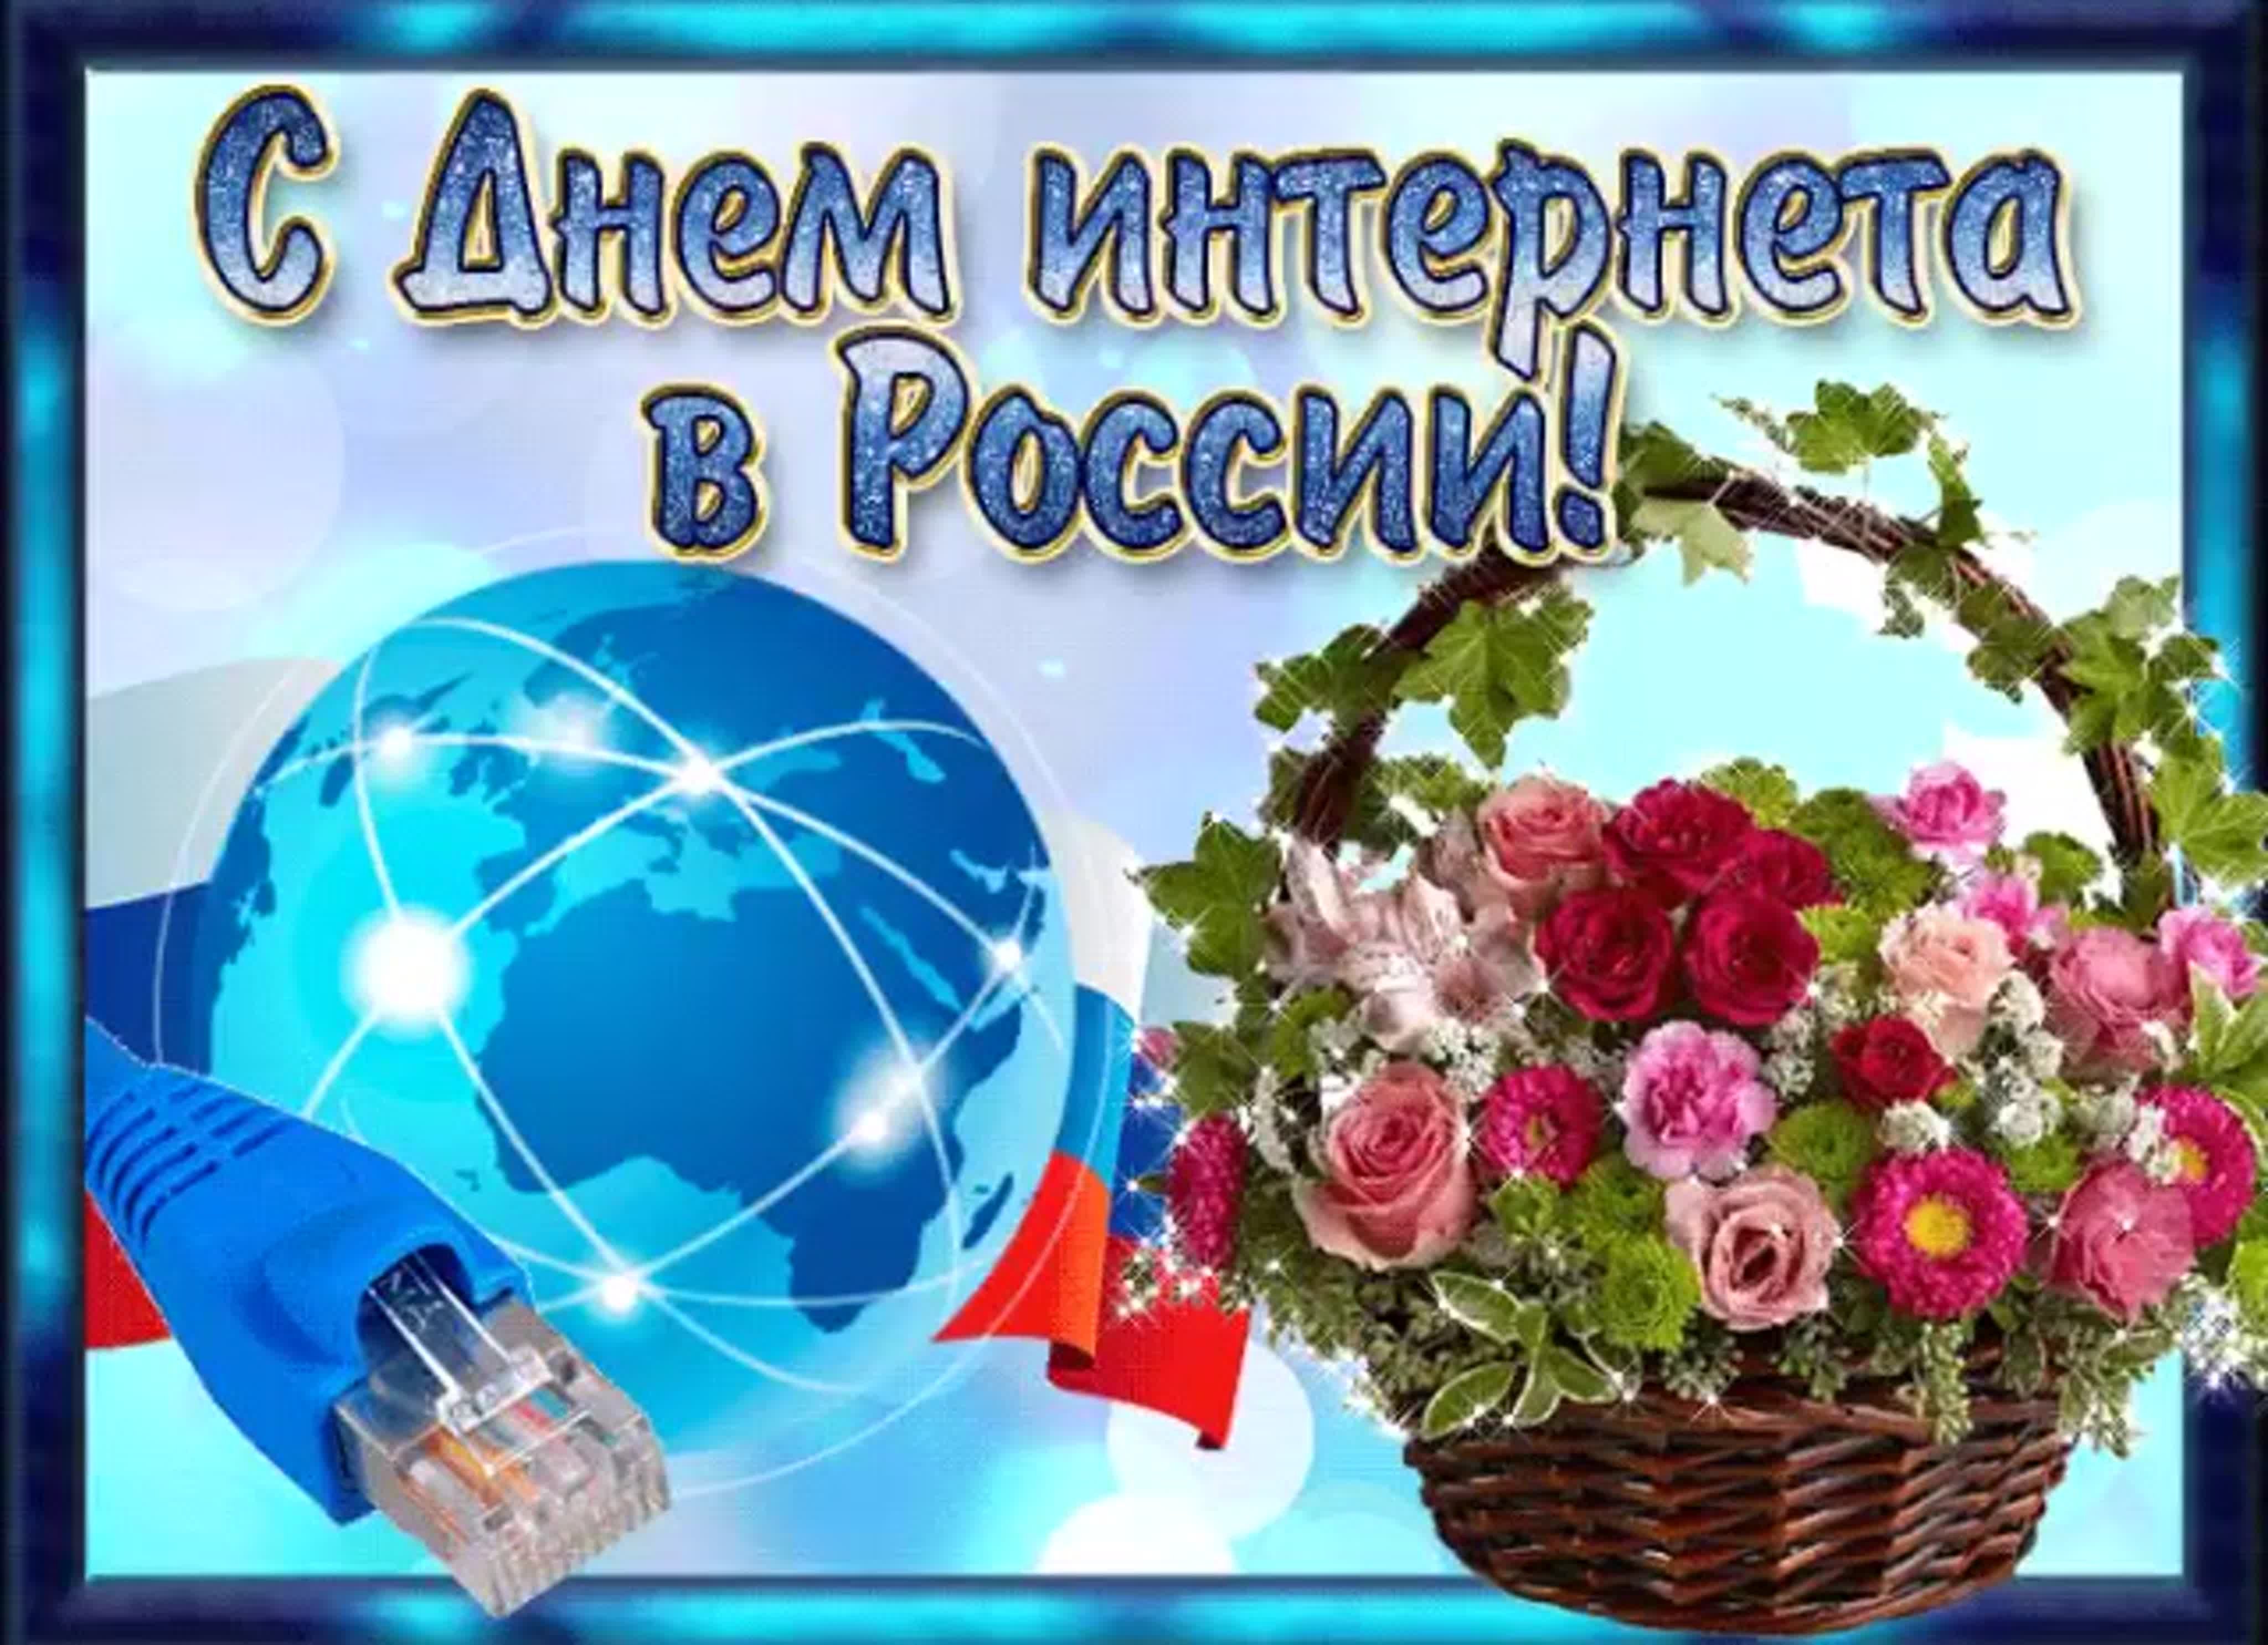 Поздравление день интернета. Поздравляю с днем интернета. День интернета в России. Международный день интернета. Всемирный день интернета 30 сентября.